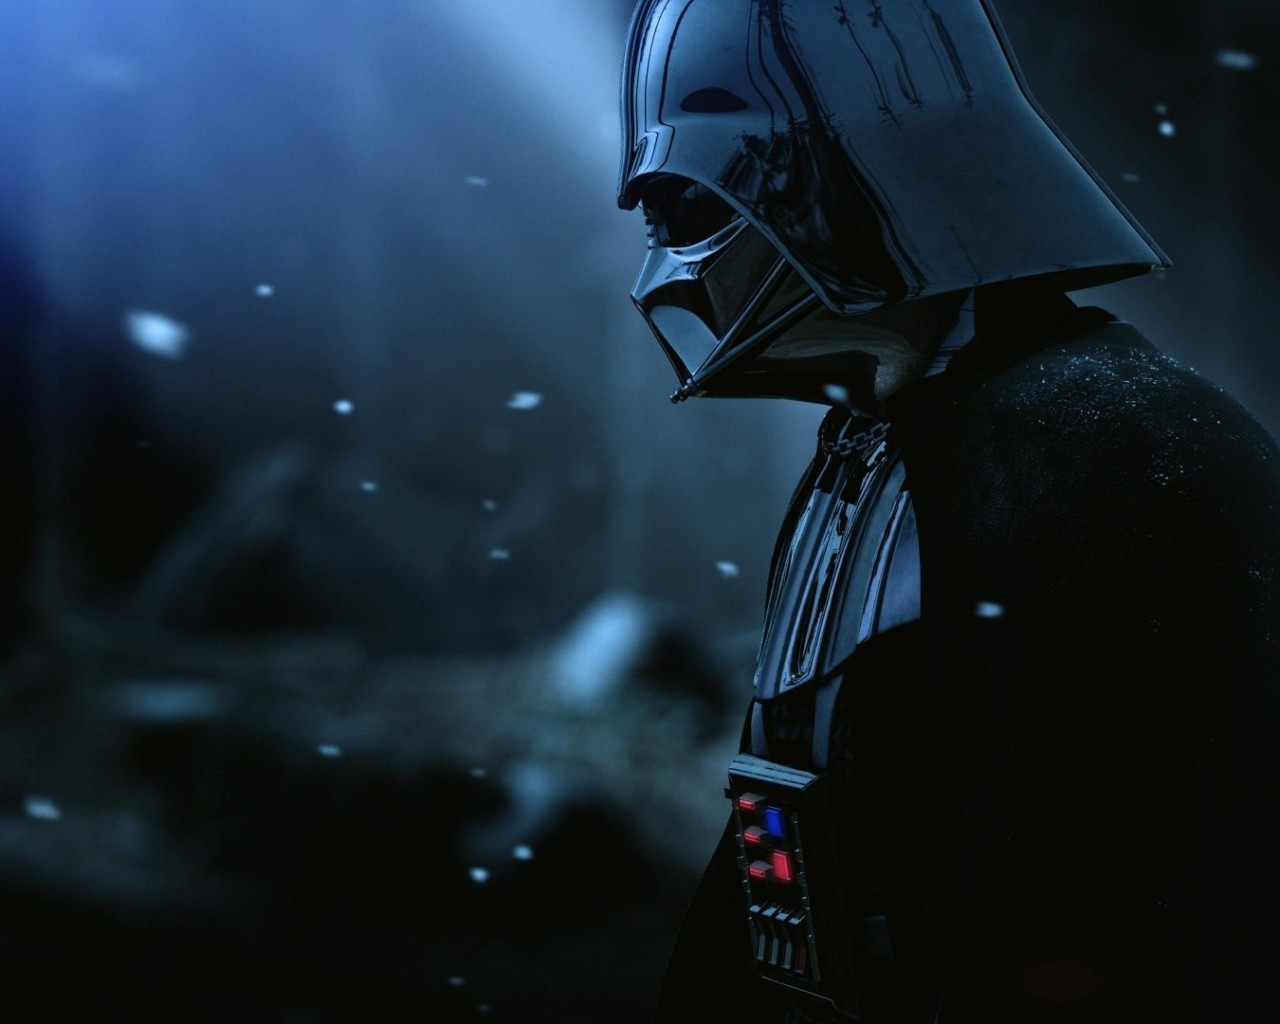 Darth Vader - The Force Unleashed 2 Wallpaper for Desktop 1280x1024